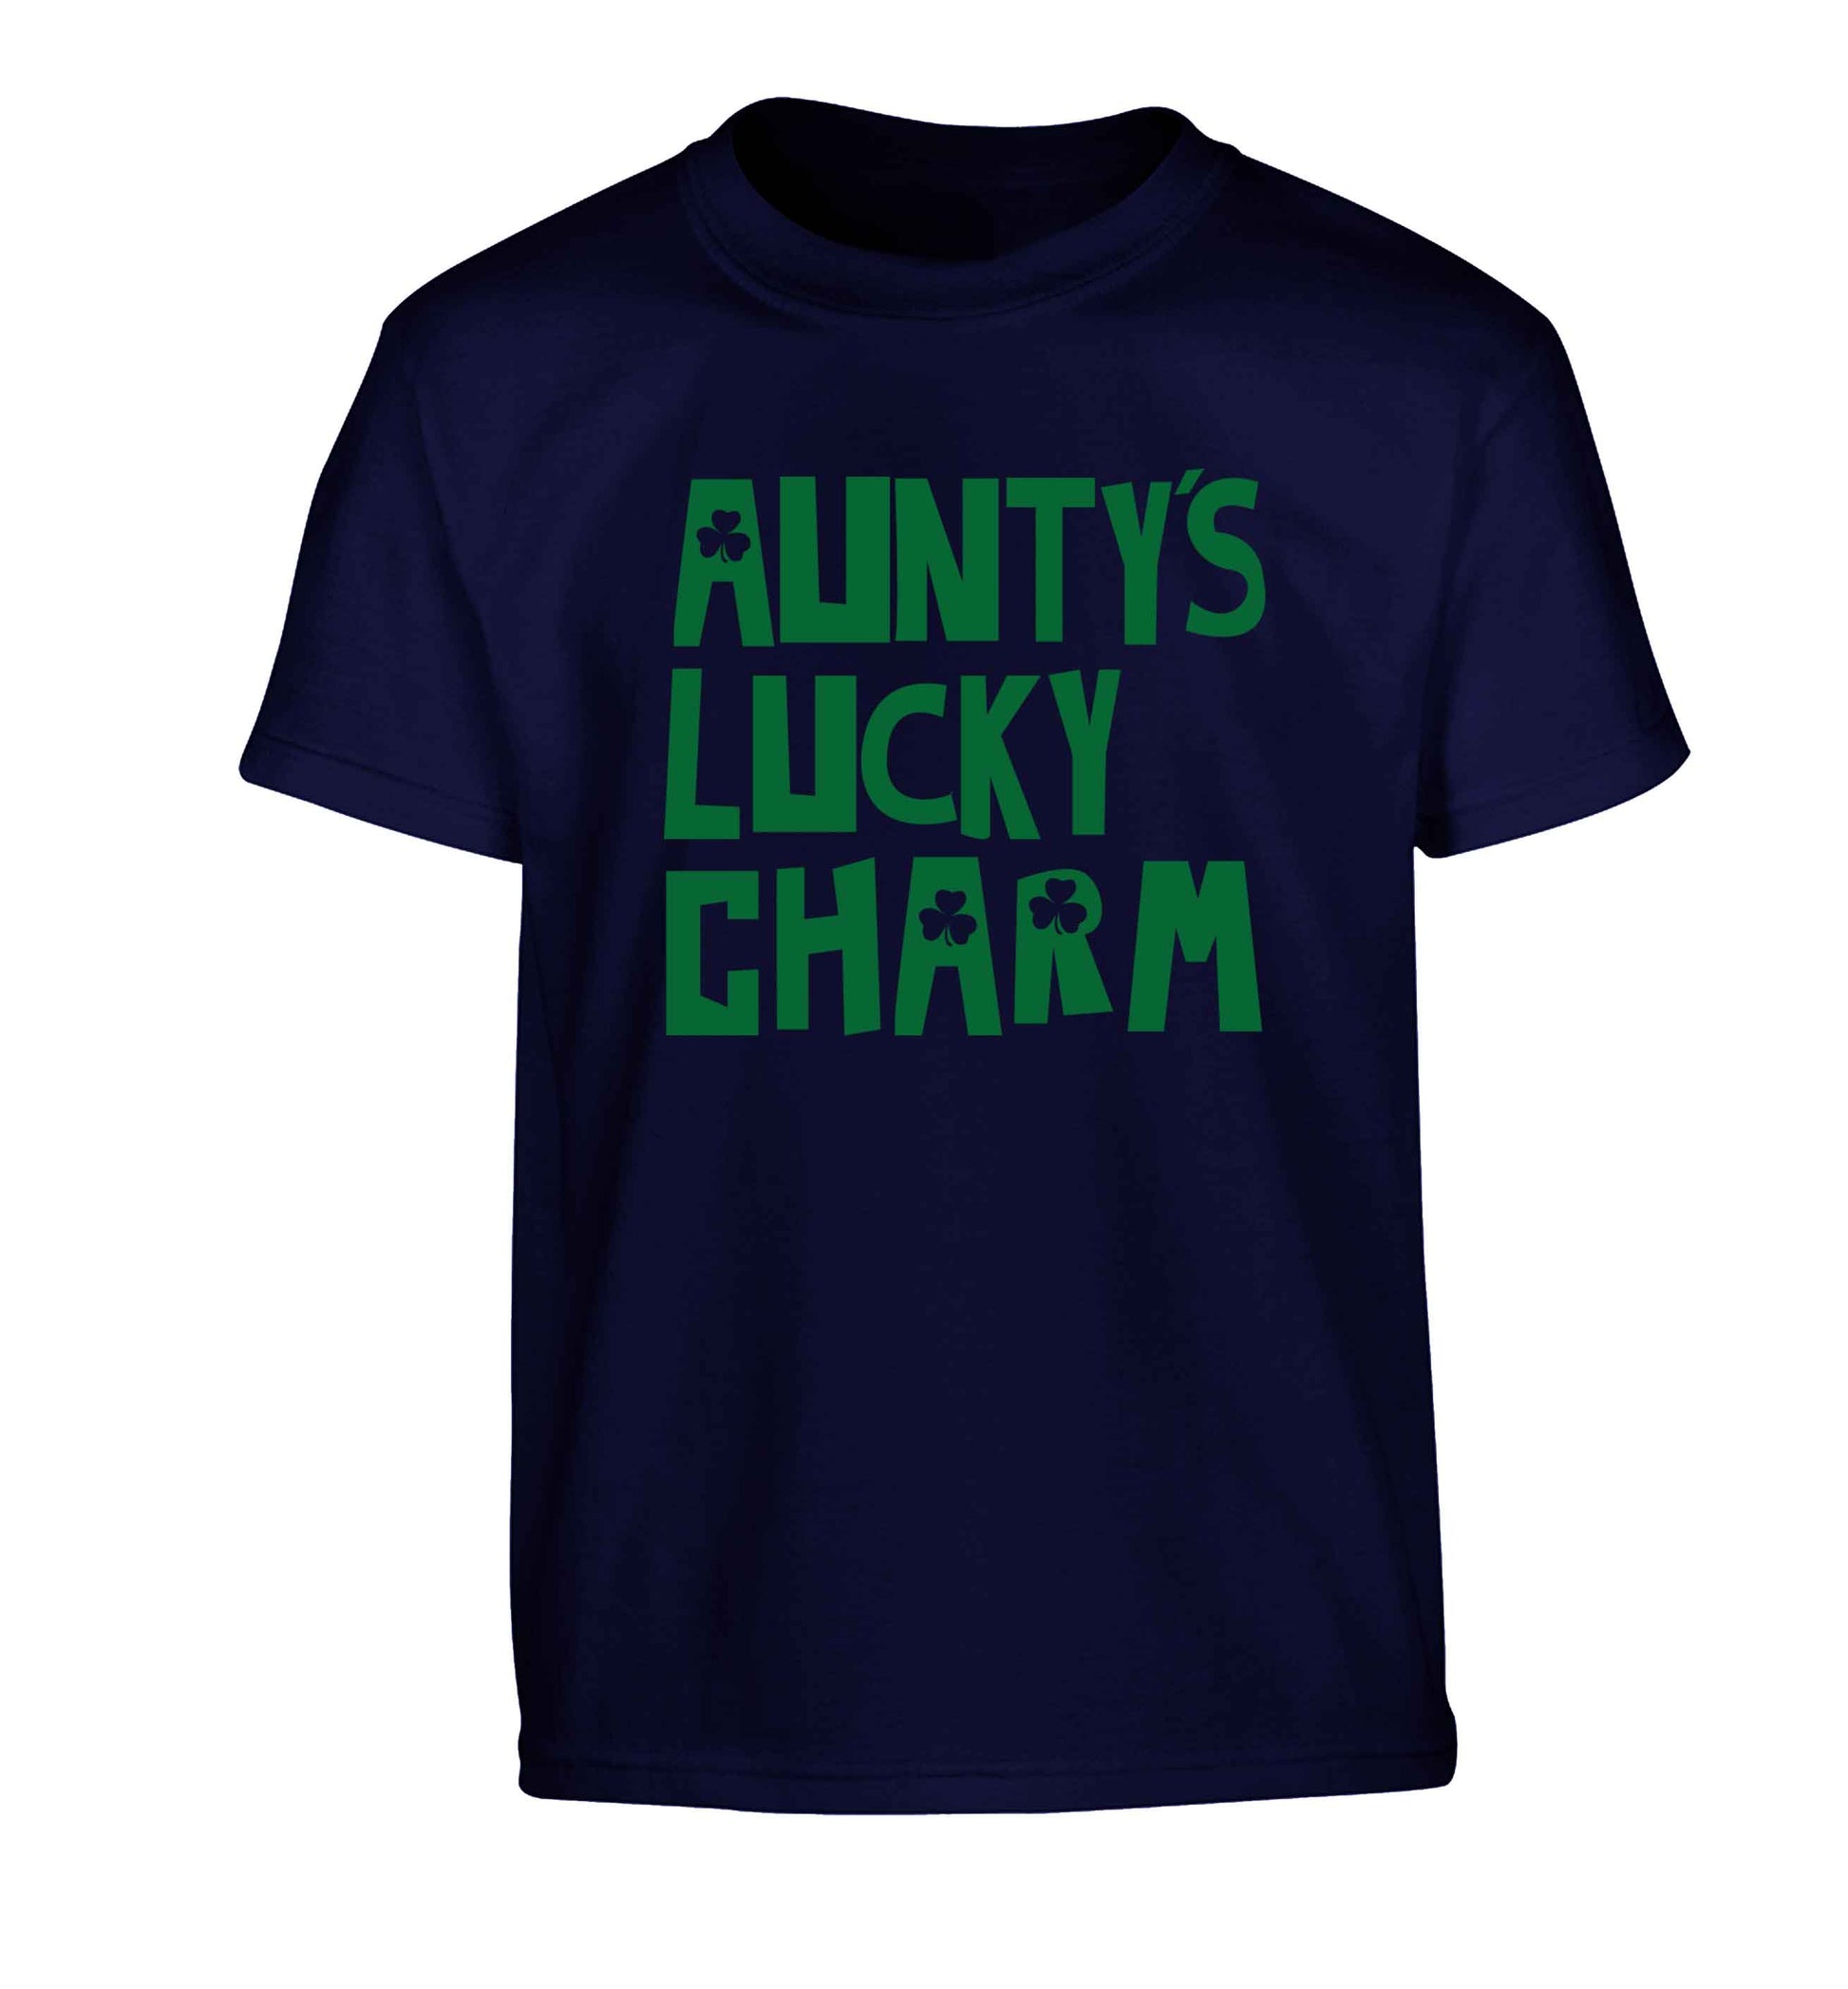 Aunty's lucky charm Children's navy Tshirt 12-13 Years